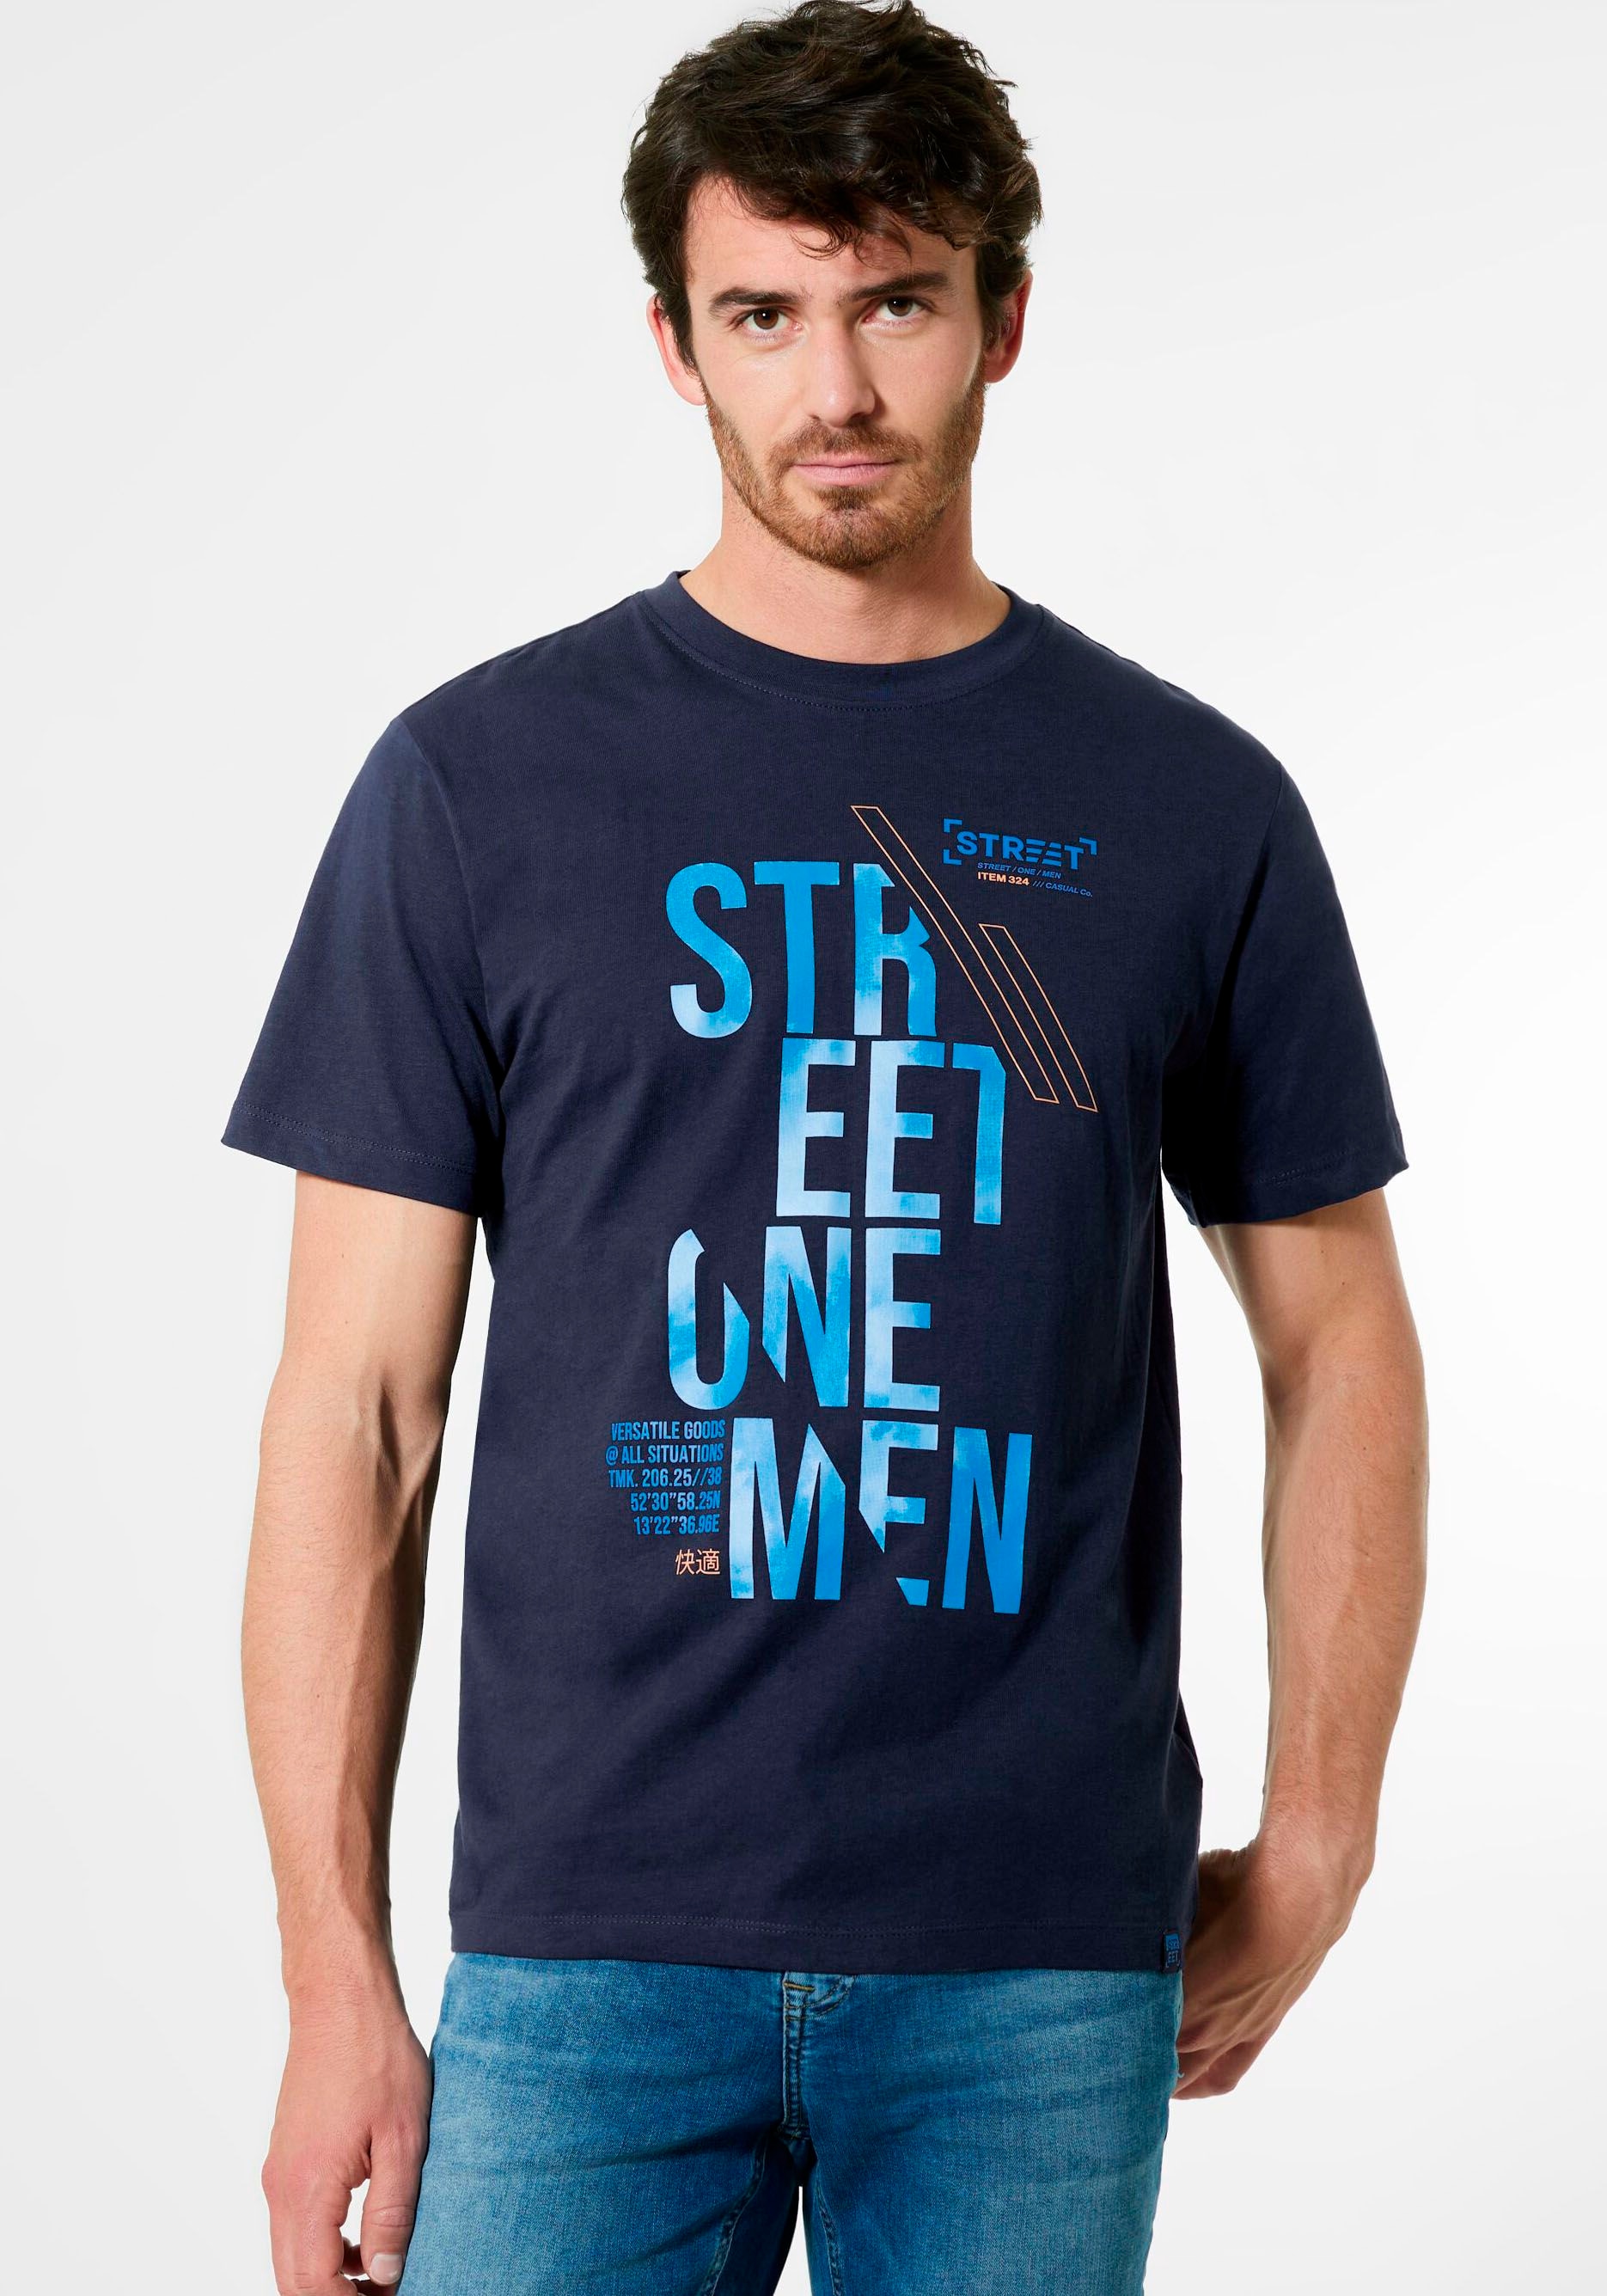 mit STREET ♕ Label-Front-Print bei ONE T-Shirt, MEN